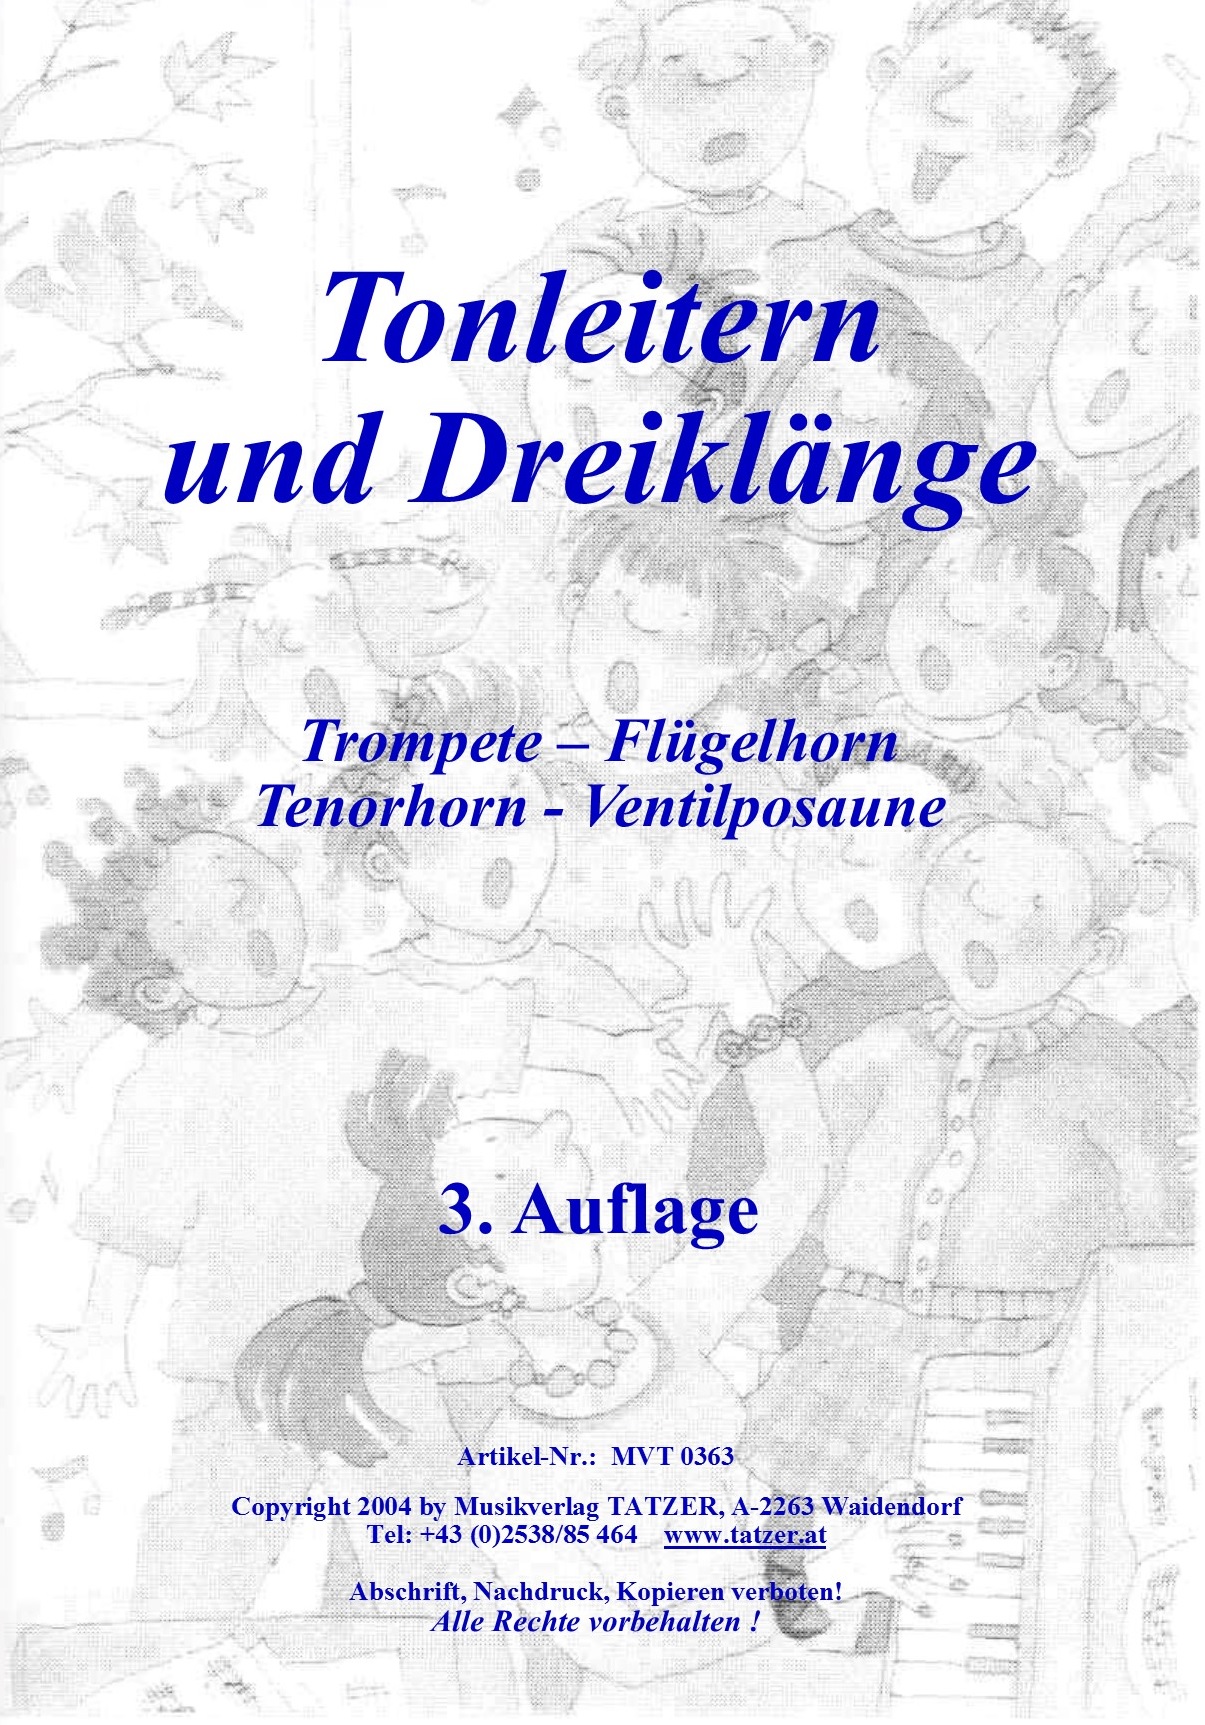 Tonleitern und Dreiklänge, Trompete-Flügelhorn-Tenorhorn